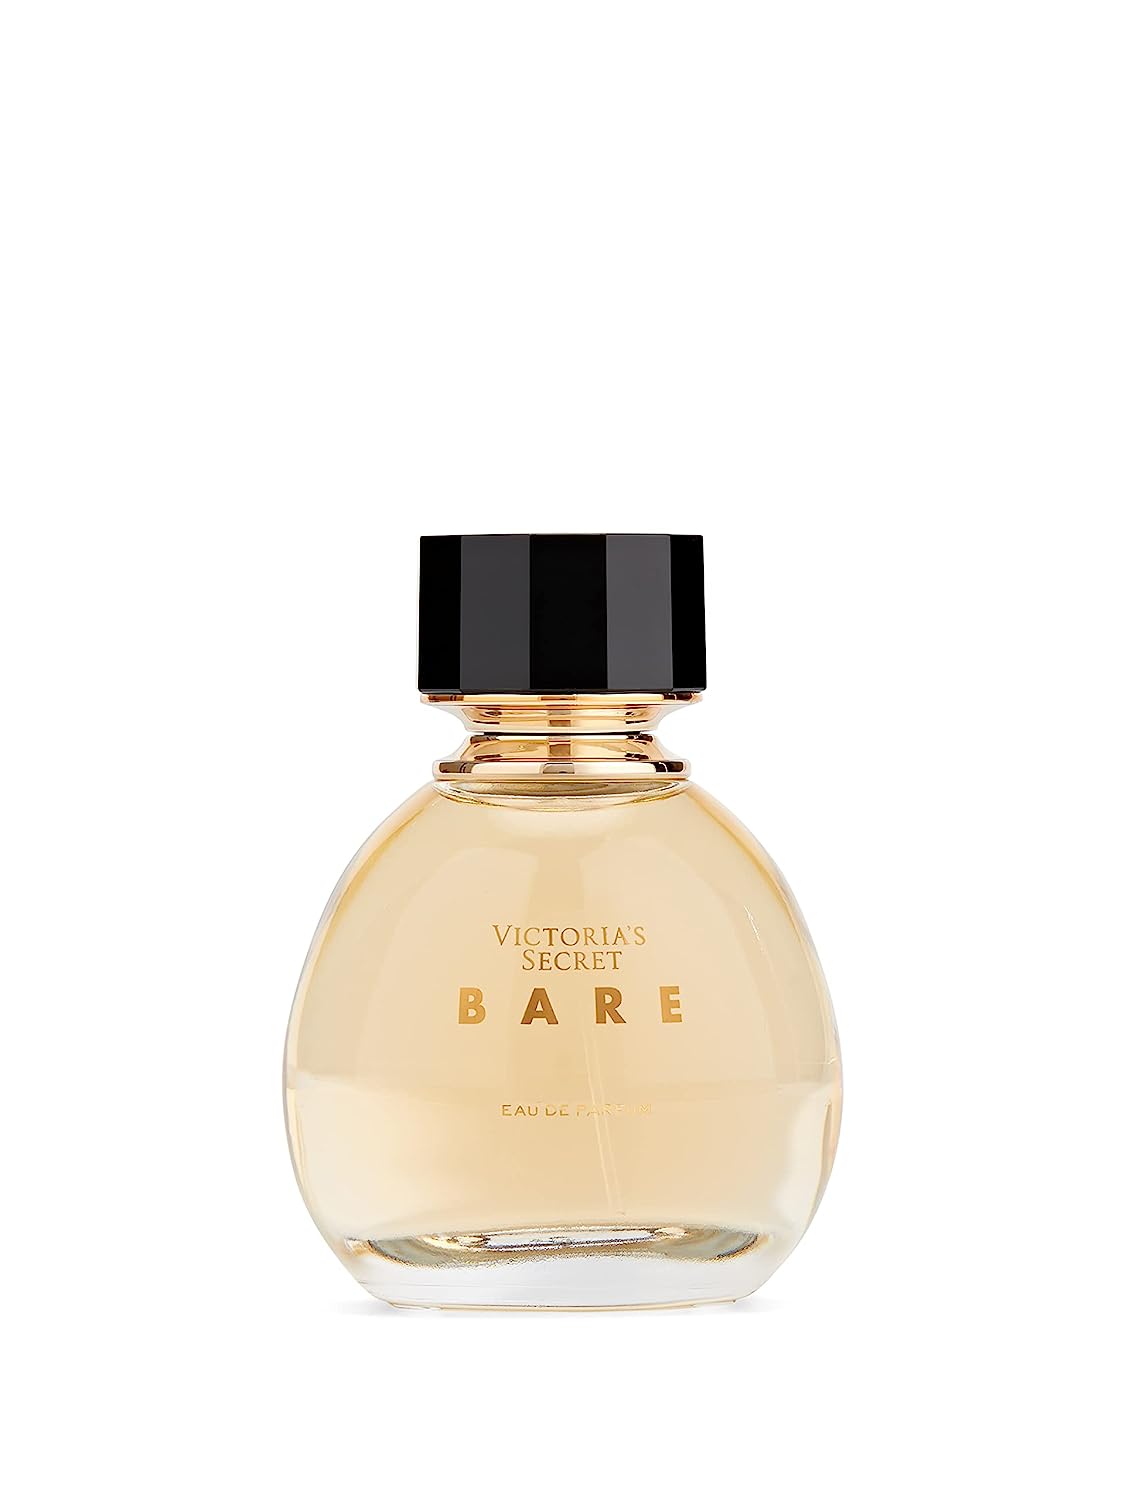 VICTORIA's SECRET Bare 3.4oz Eau de Parfum